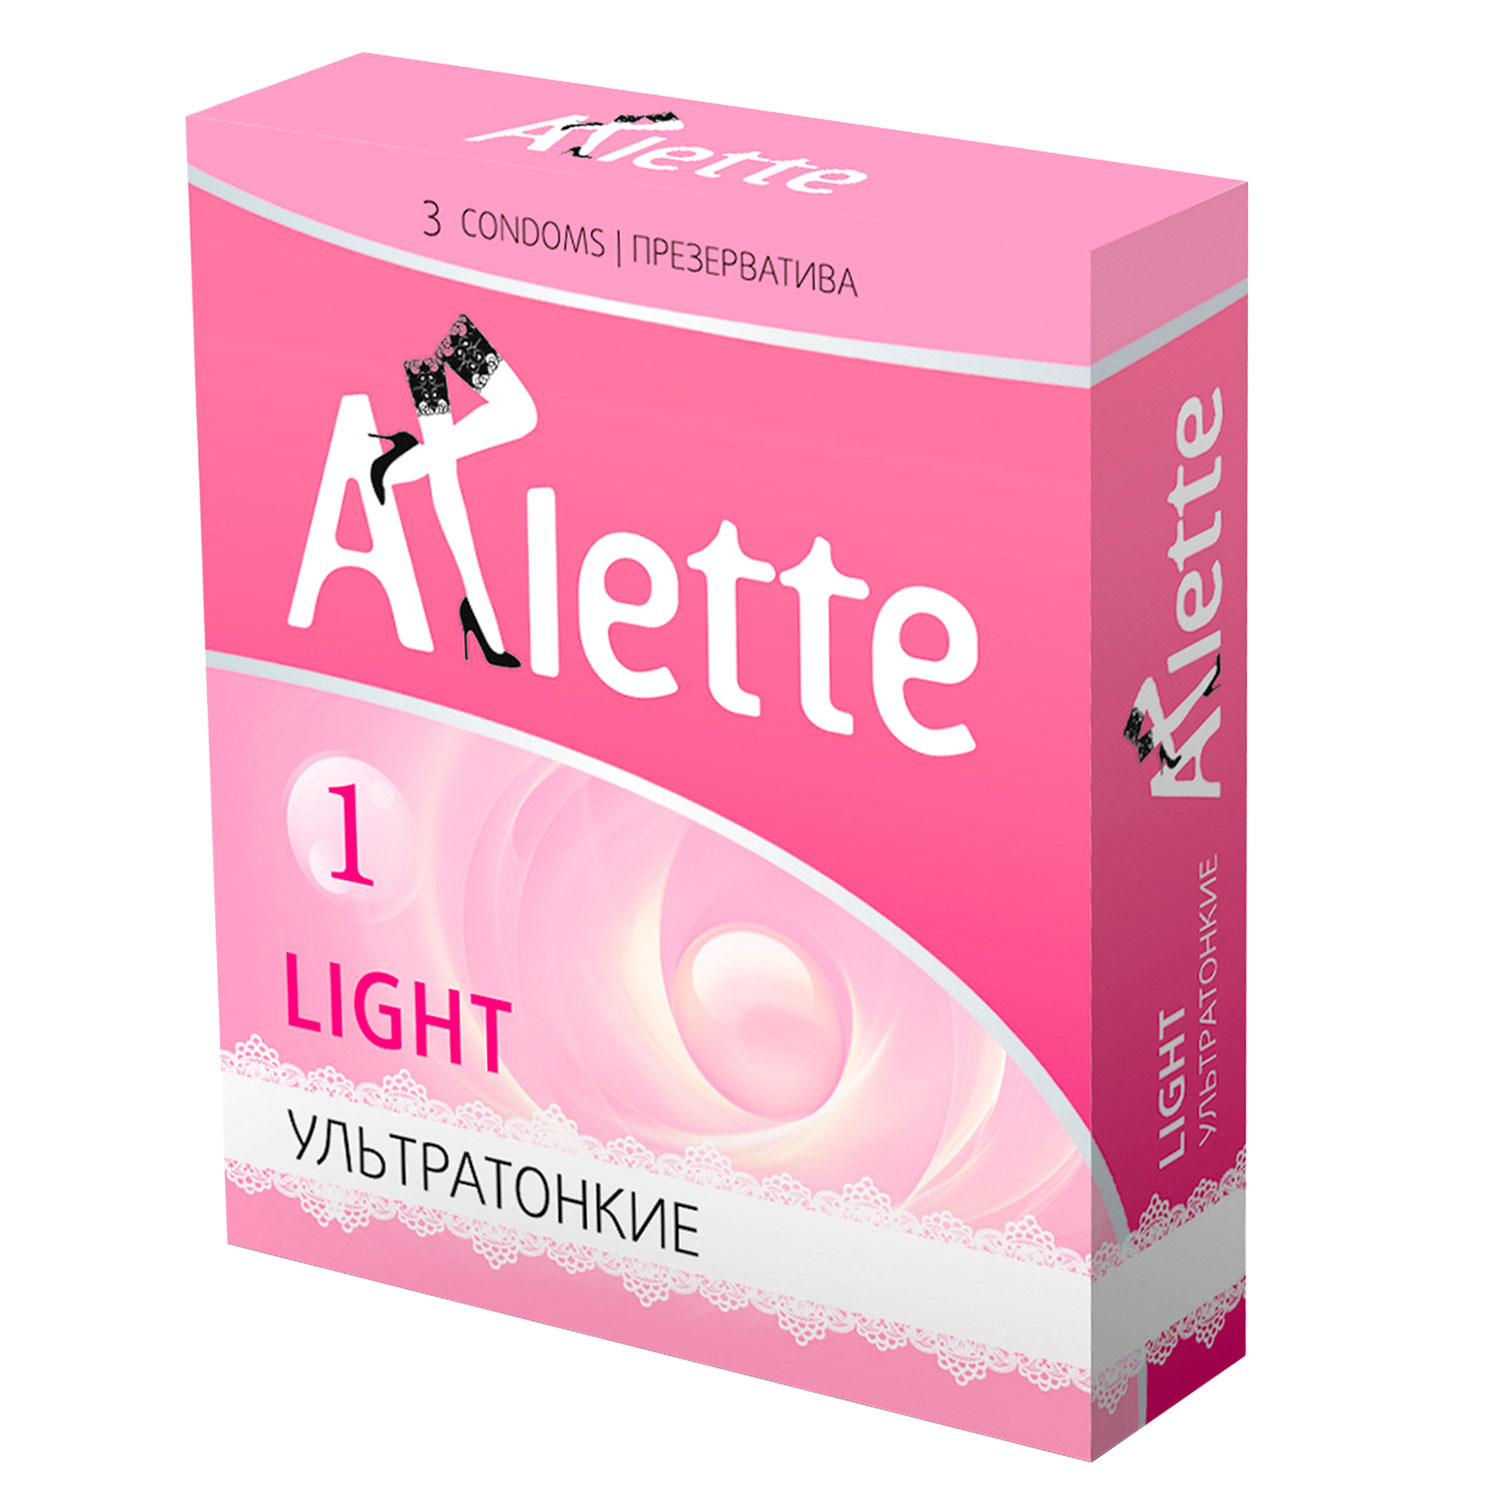 Презервативы Arlette Light ультратонкие, 3шт